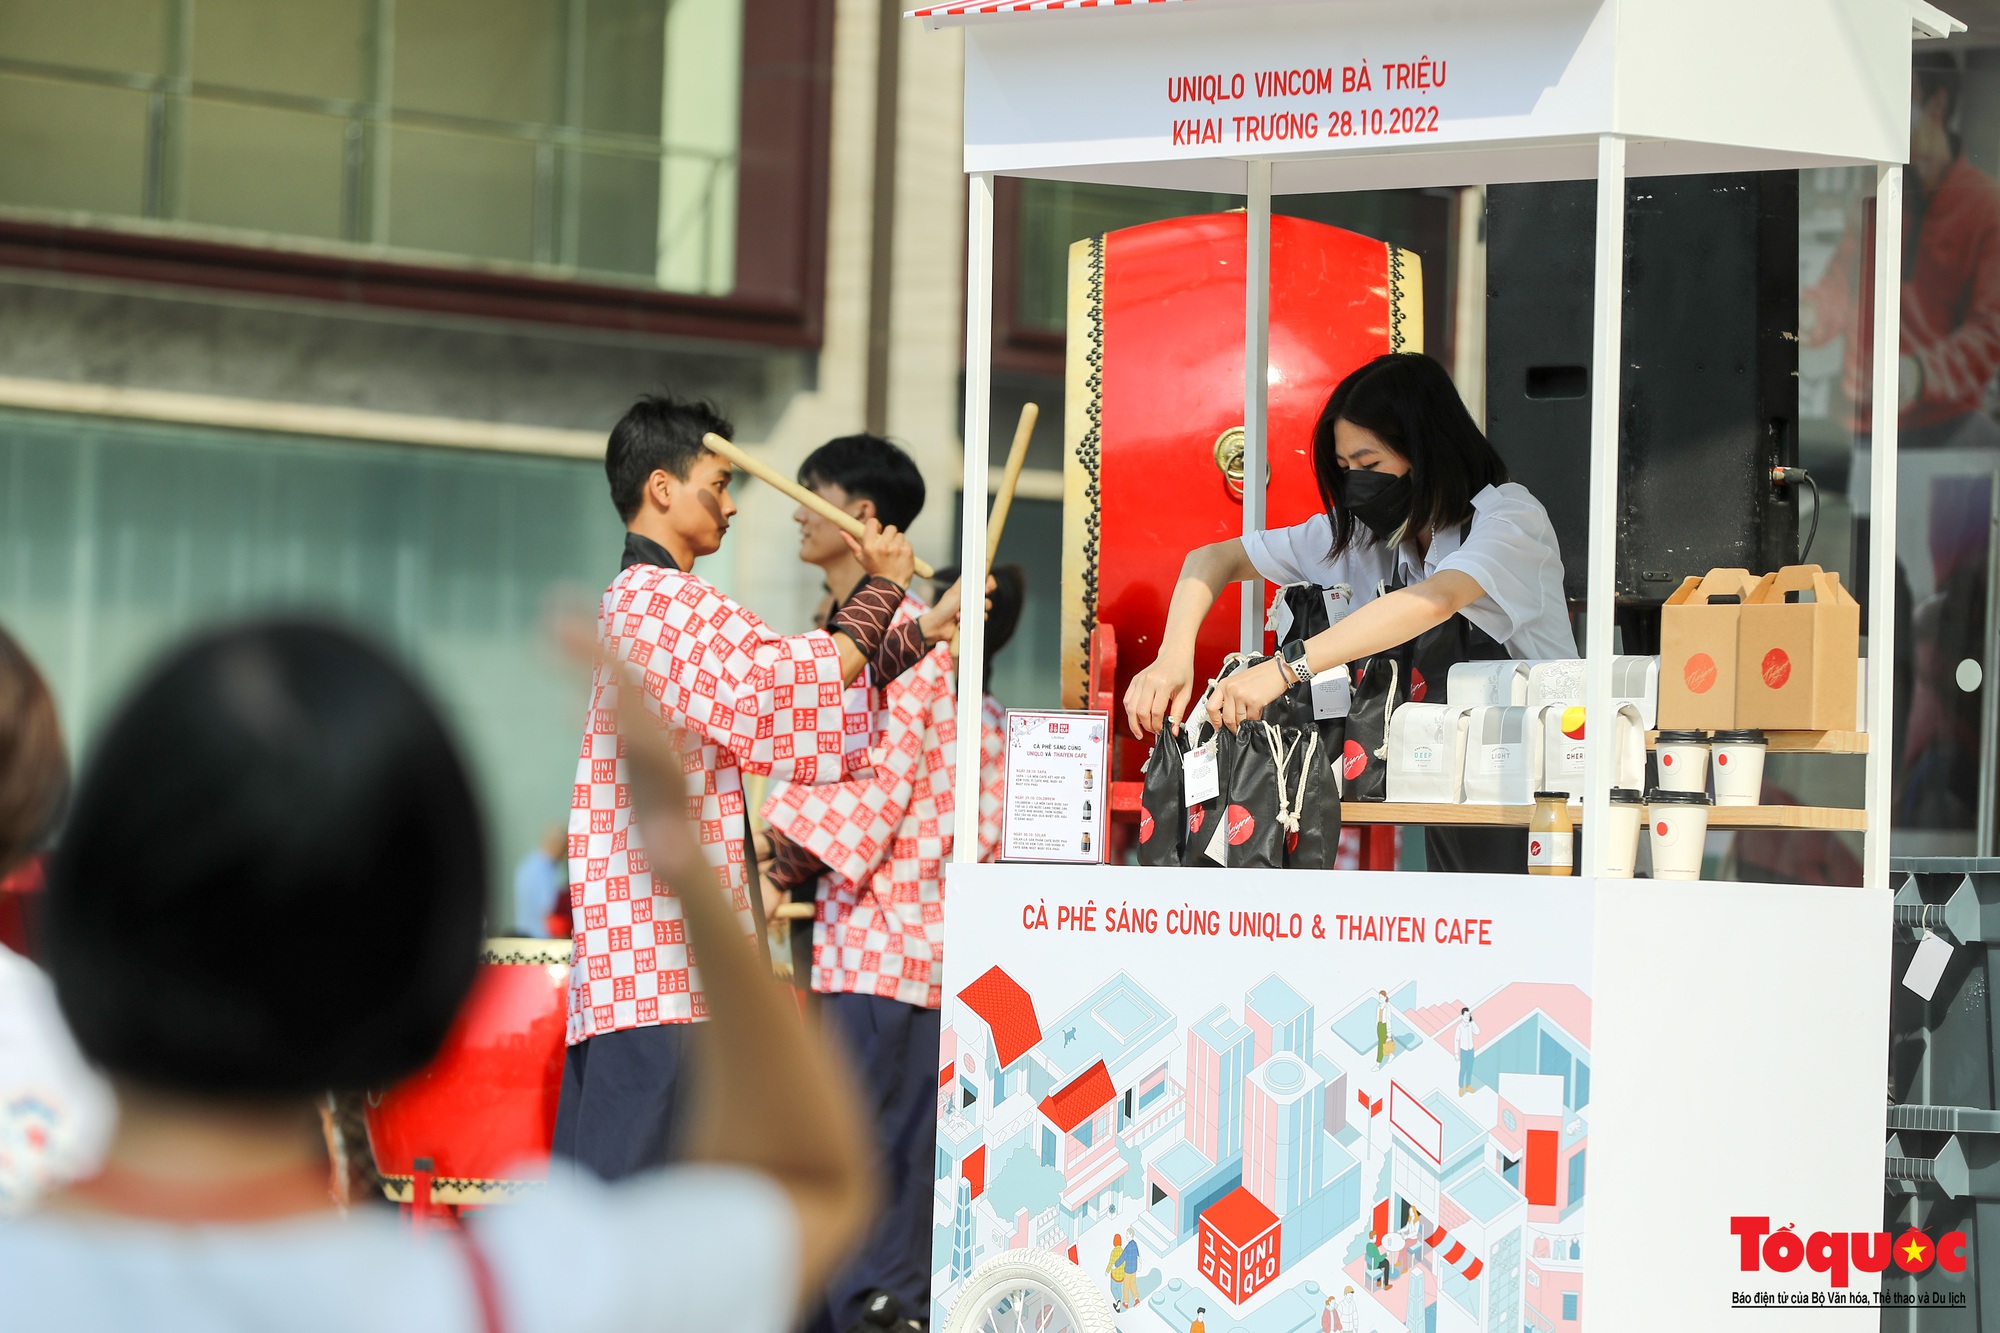 UNIQLO công bố khai trương cửa hàng tại tòa nhà IPH Hà Nội